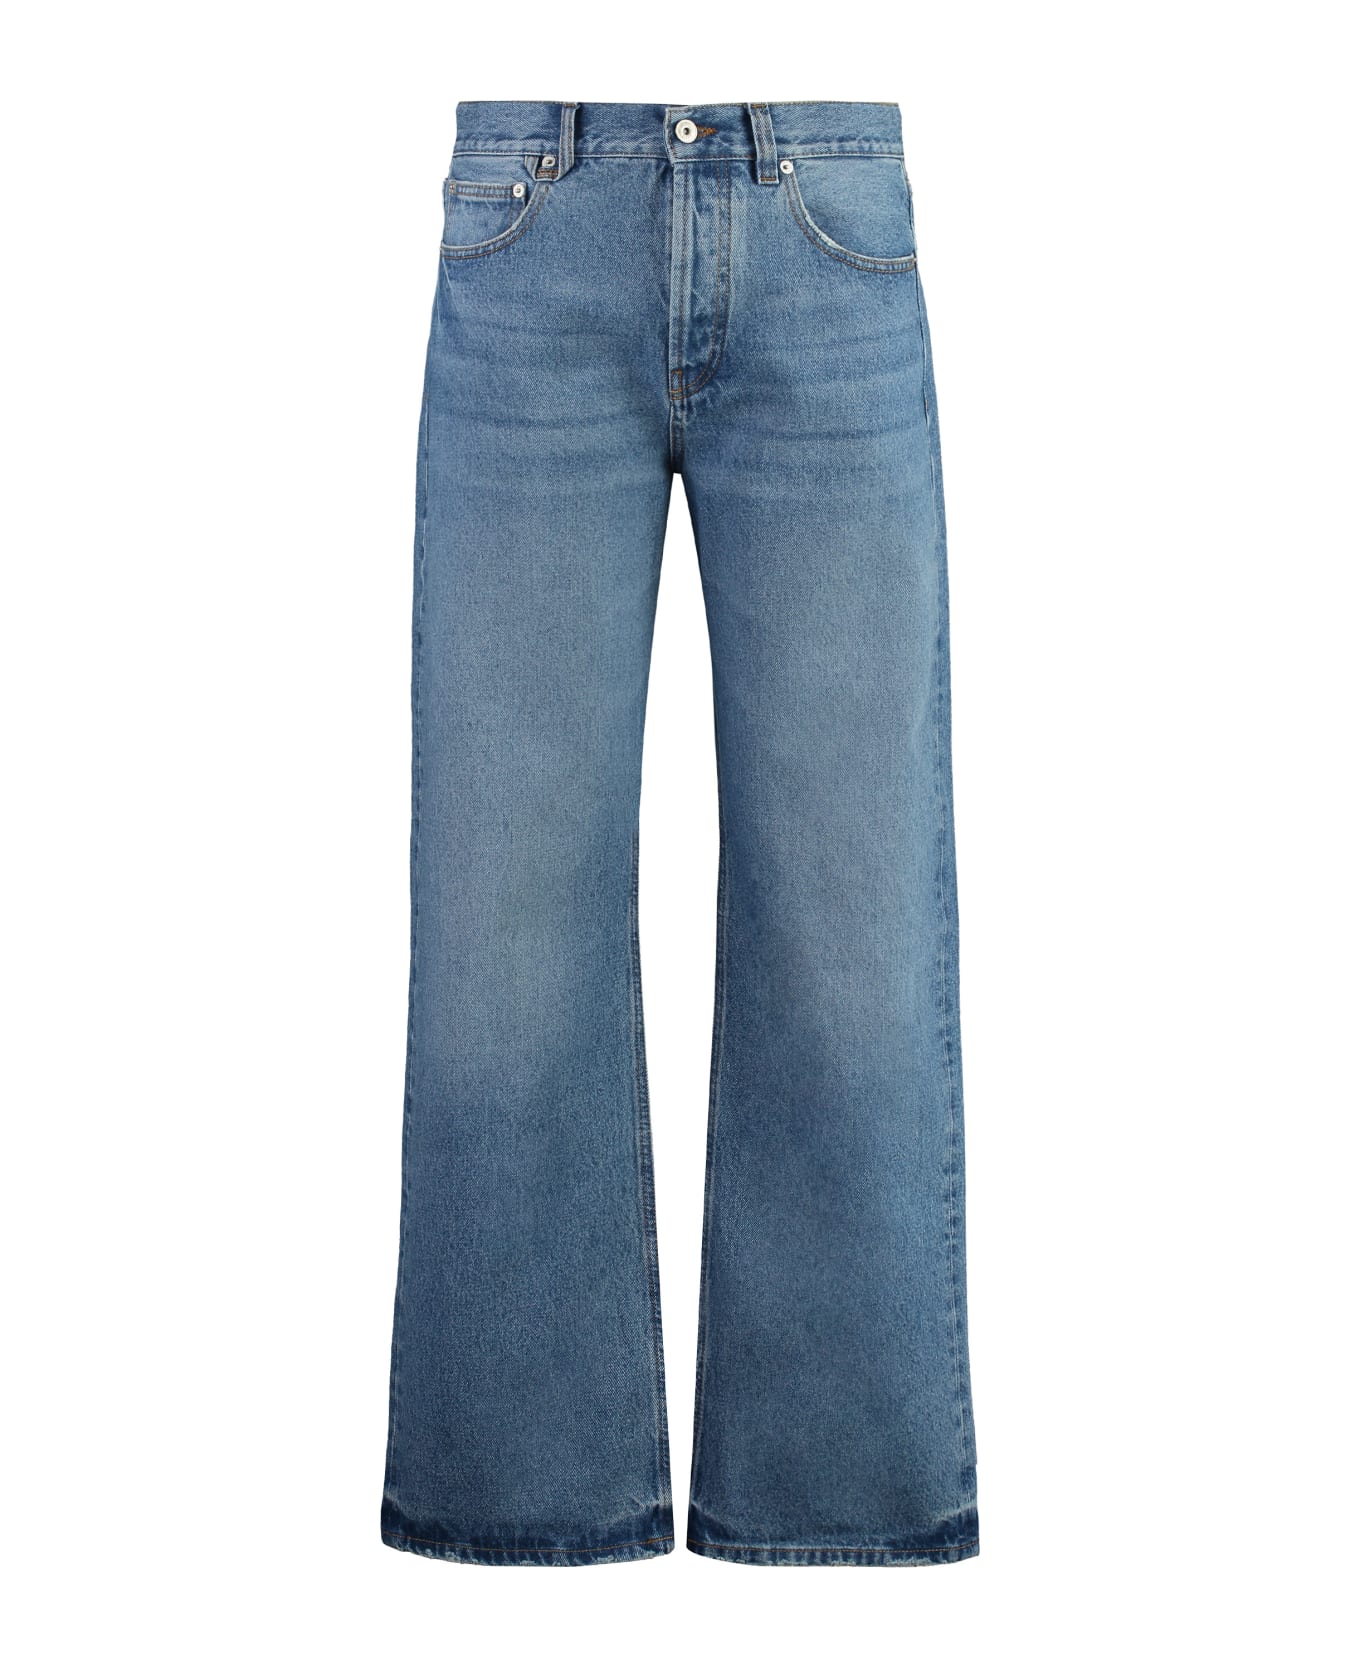 Jacquemus Nîmes 5-pocket Straight-leg Jeans - 33C BLUE/TABAC